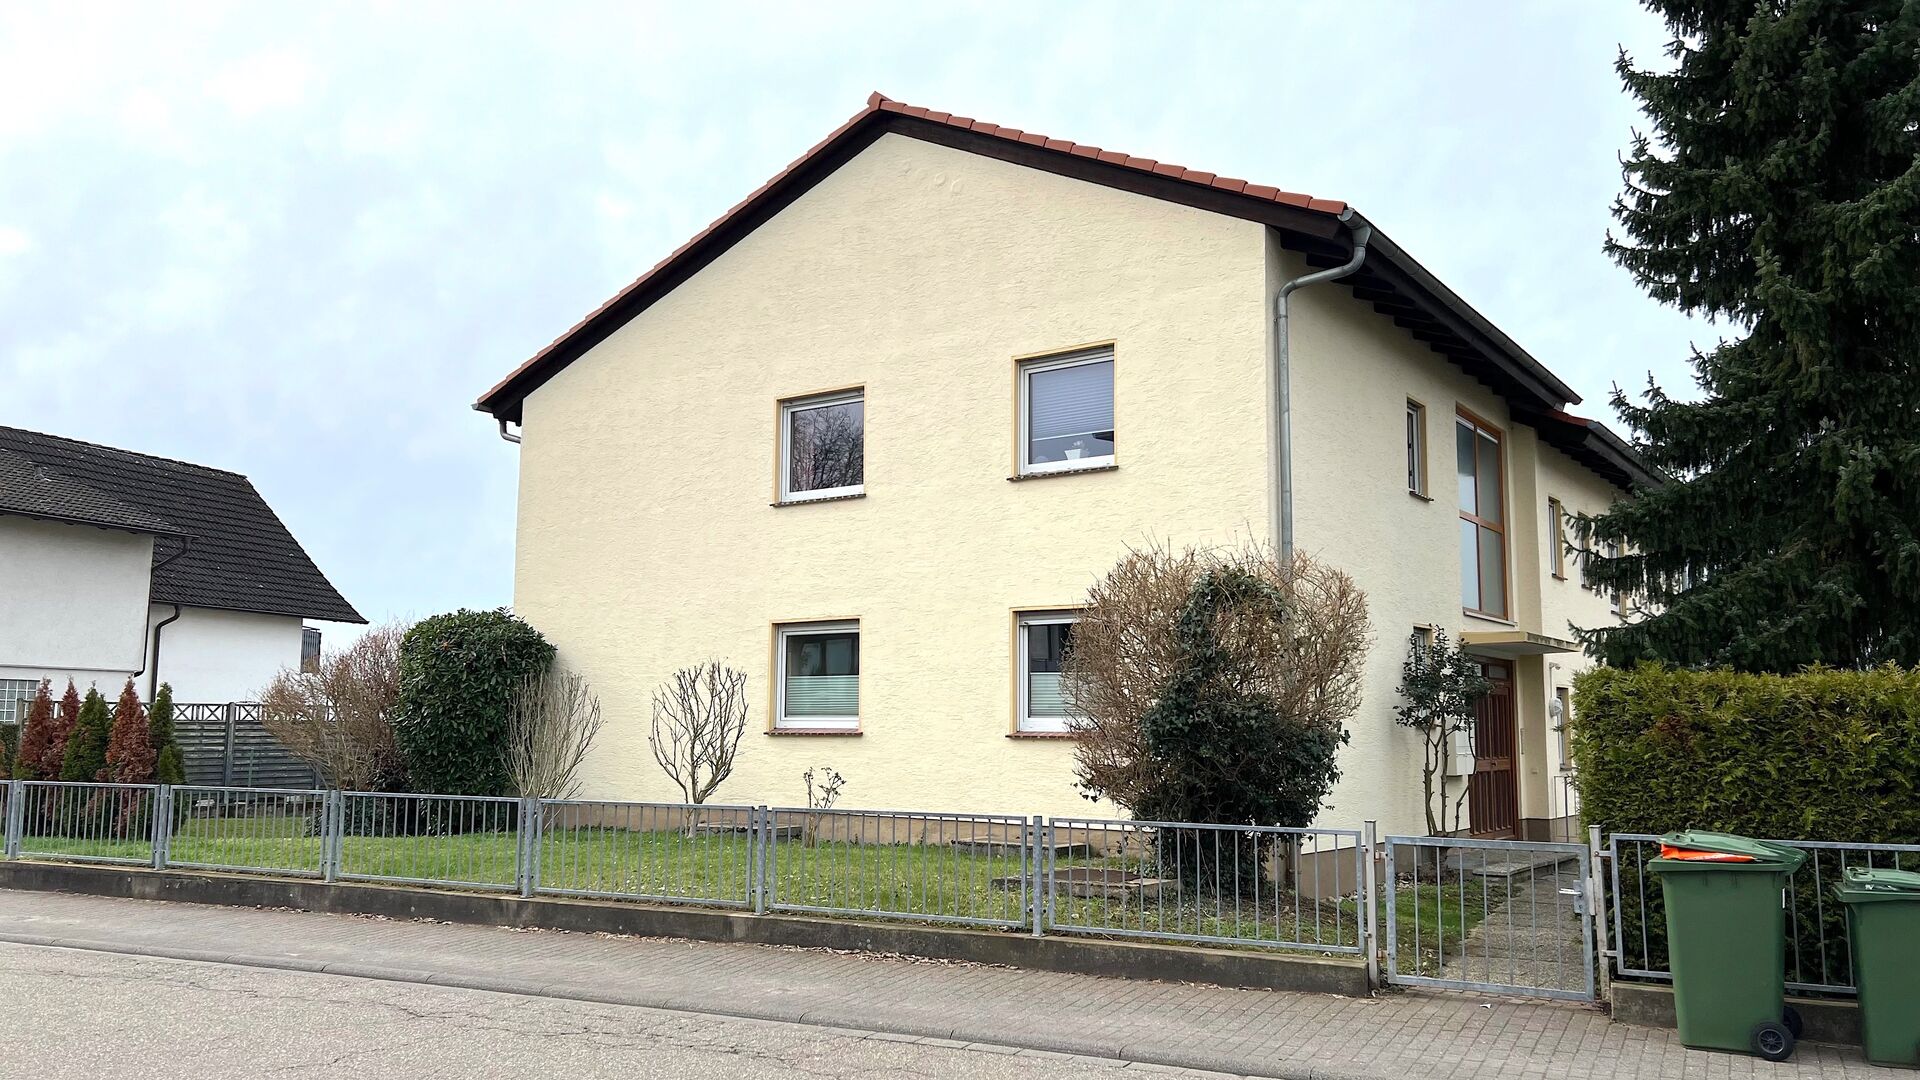 Wohnhaus mit 4 Einheiten in exklusiver Lage, Weinheim-Lützelsachen -VERKAUFT- in Weinheim